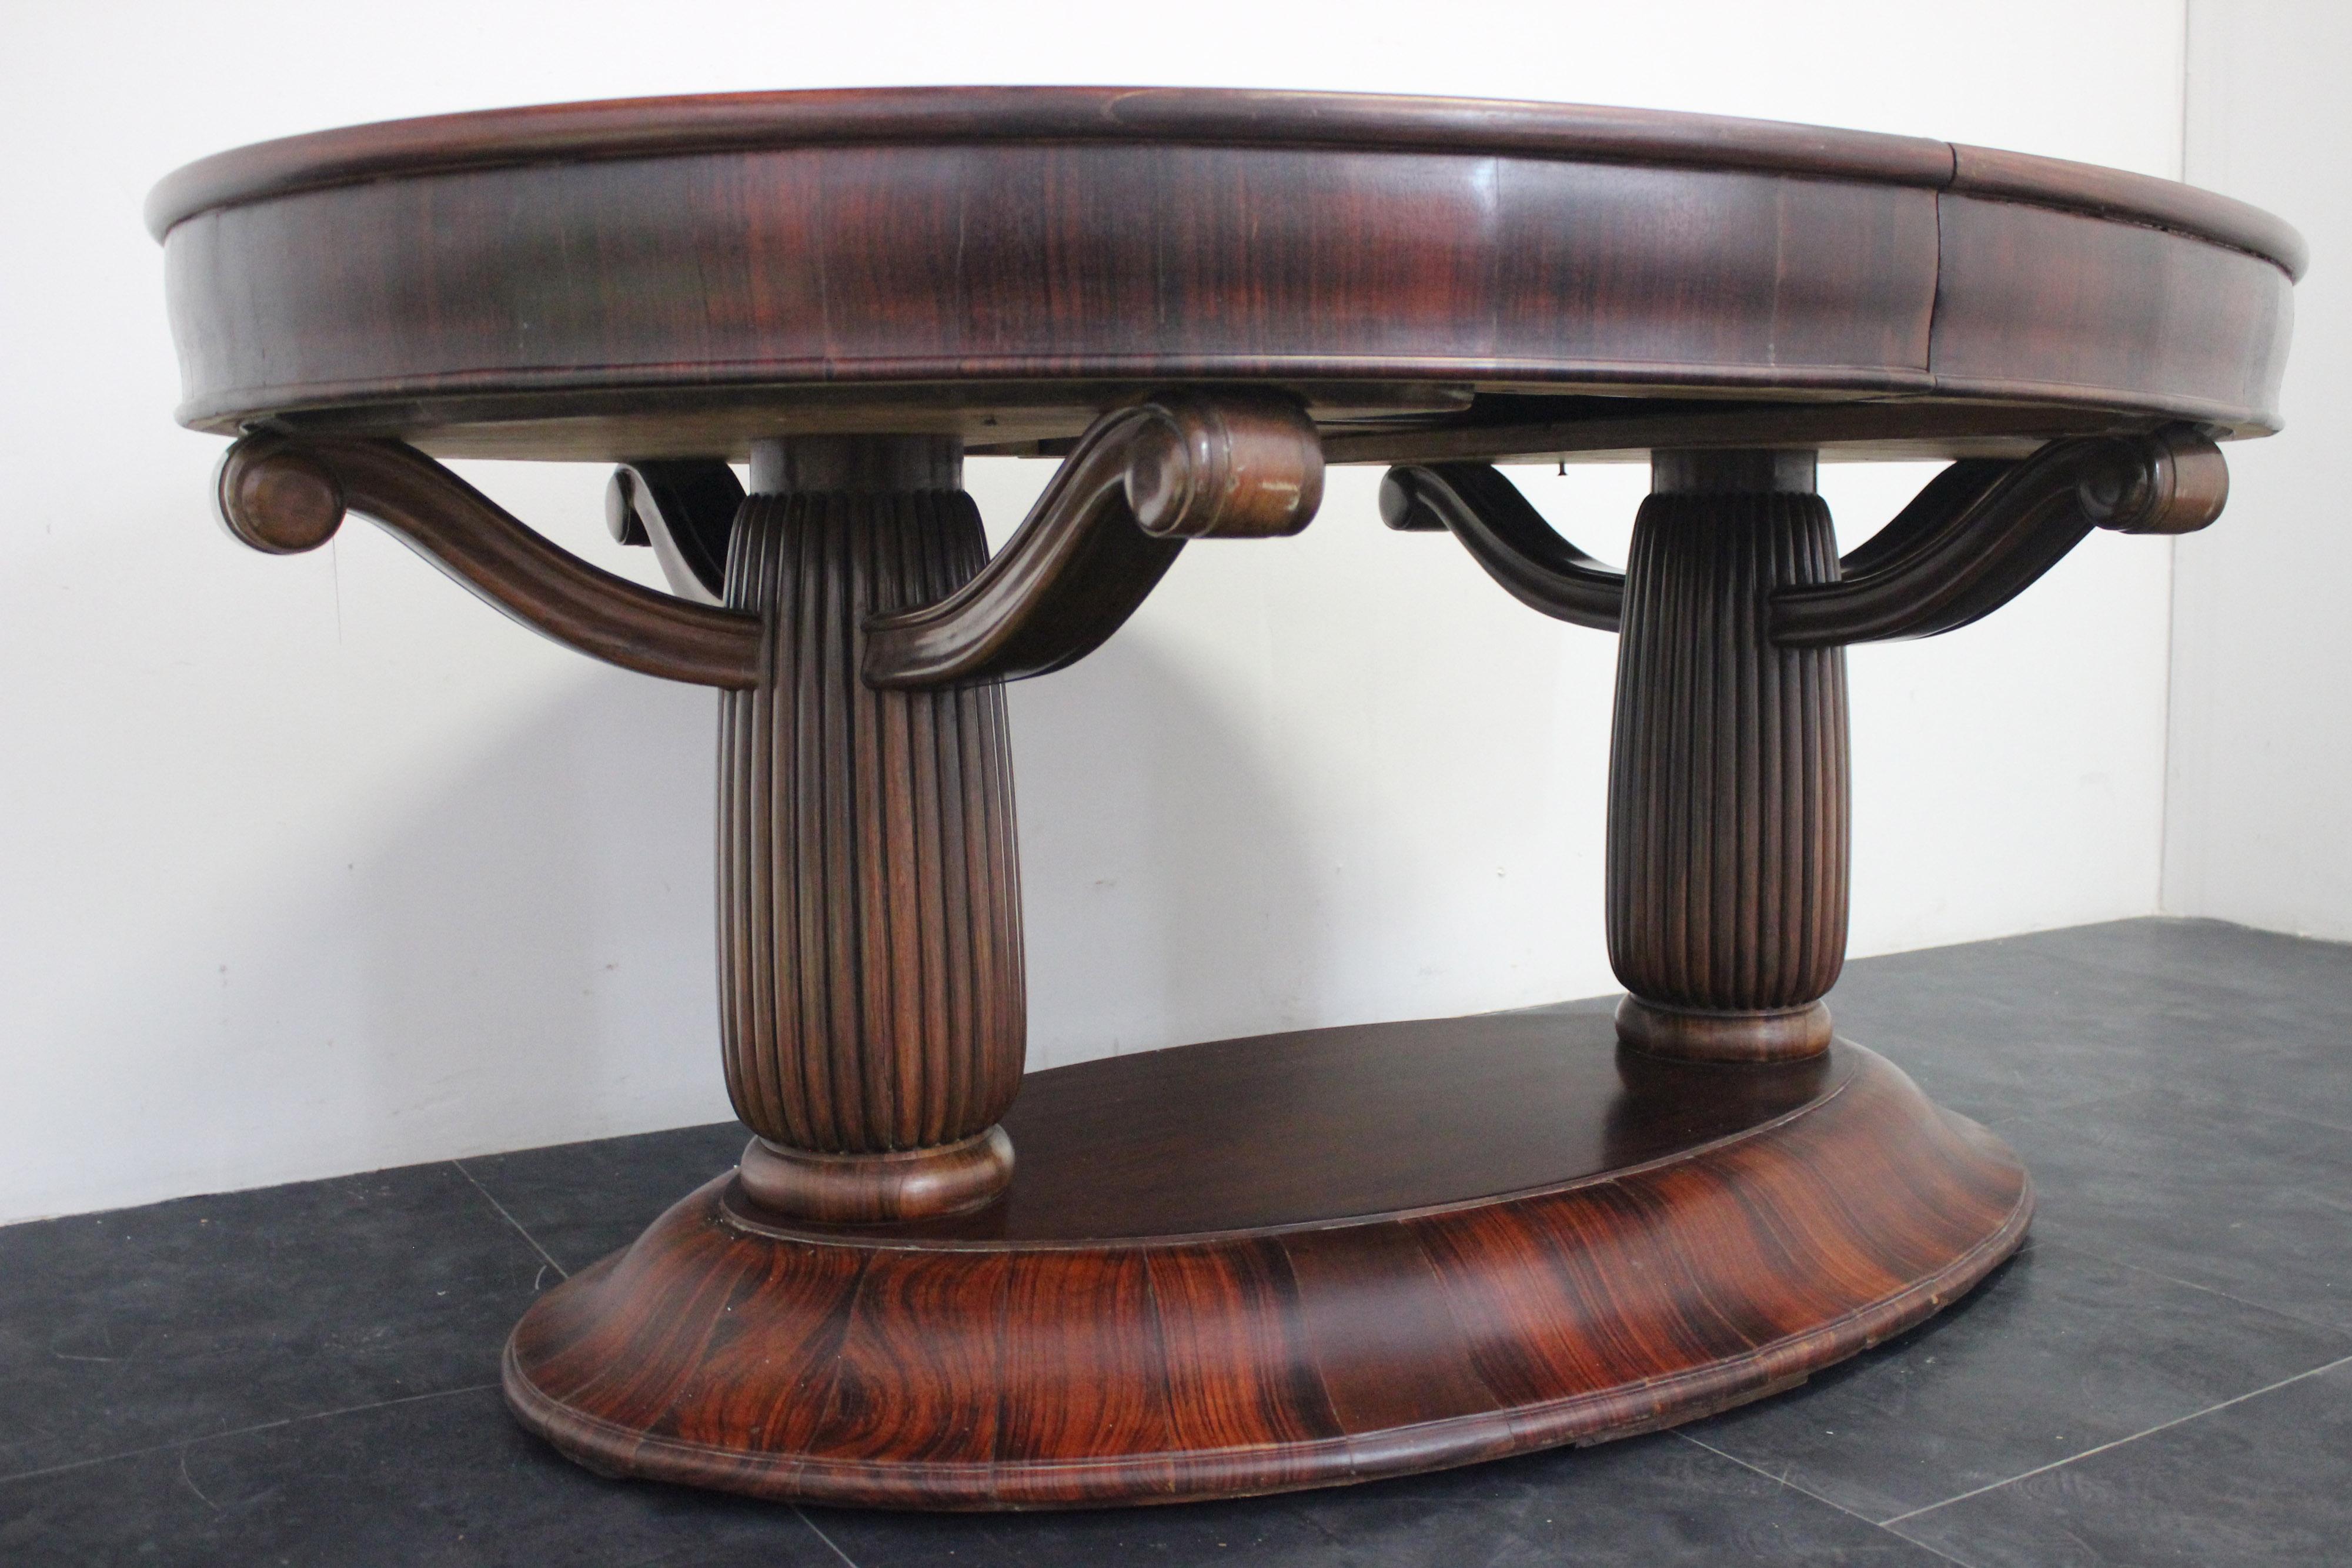 Imposanter ovaler Art-déco-Tisch aus massivem Palisanderholz. Der Sockel ist geformt und mit geflammten Teilen aus massivem Palisanderholz verkleidet, die ovalen Säulen sind gerillt, wobei drei Arme den Deckel tragen, wie unten in Fragmenten aus